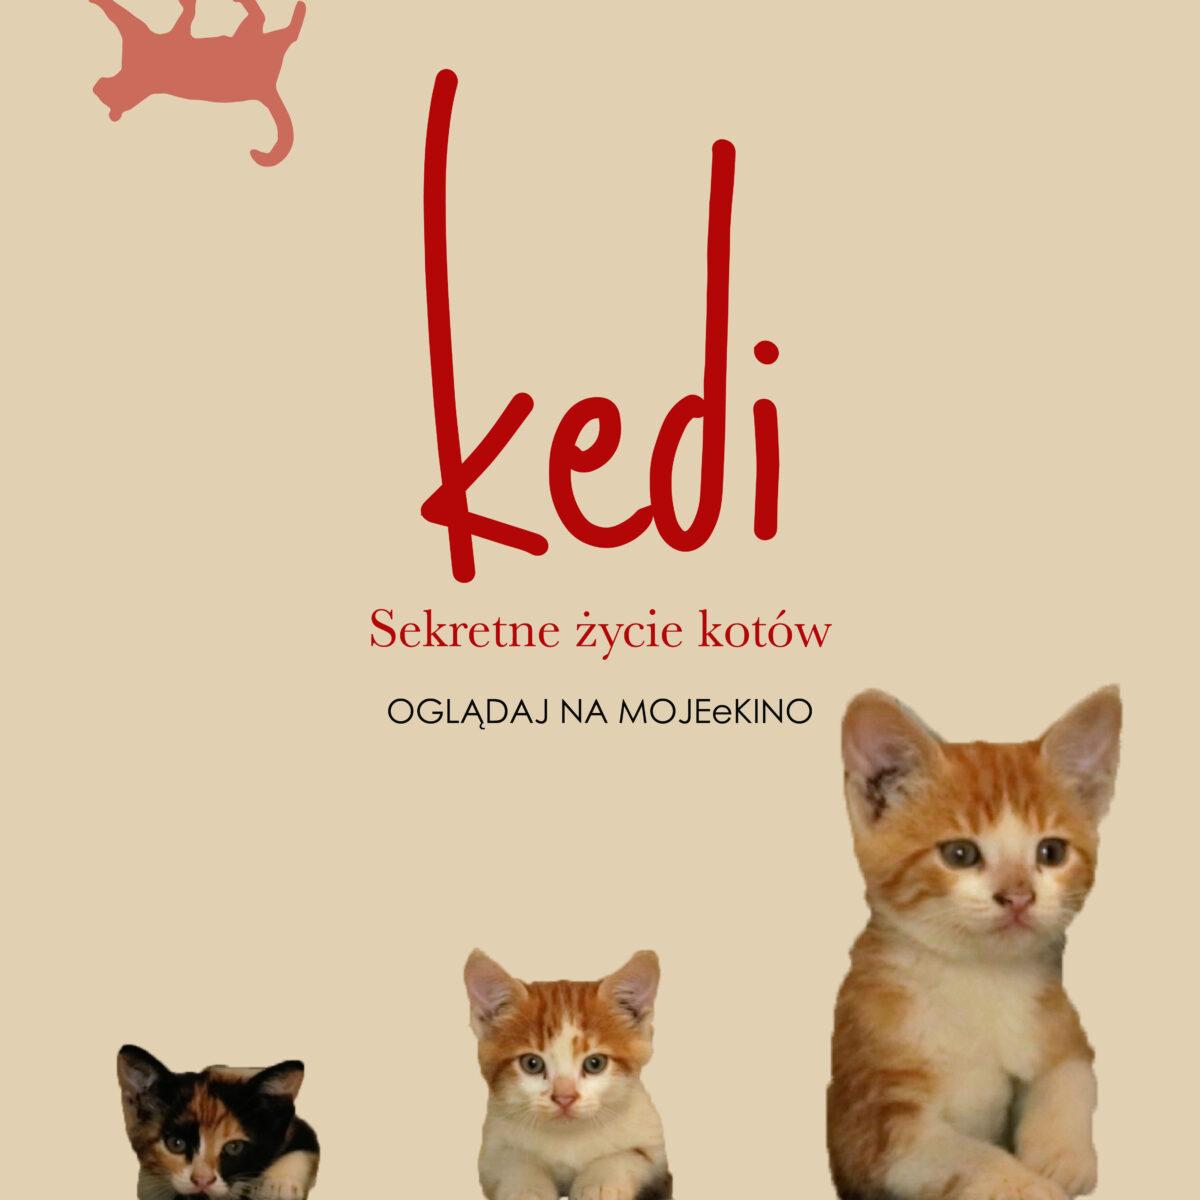 Kedi. Sekretne życie kotów - od 29.07.21 na mojeekino.pl!